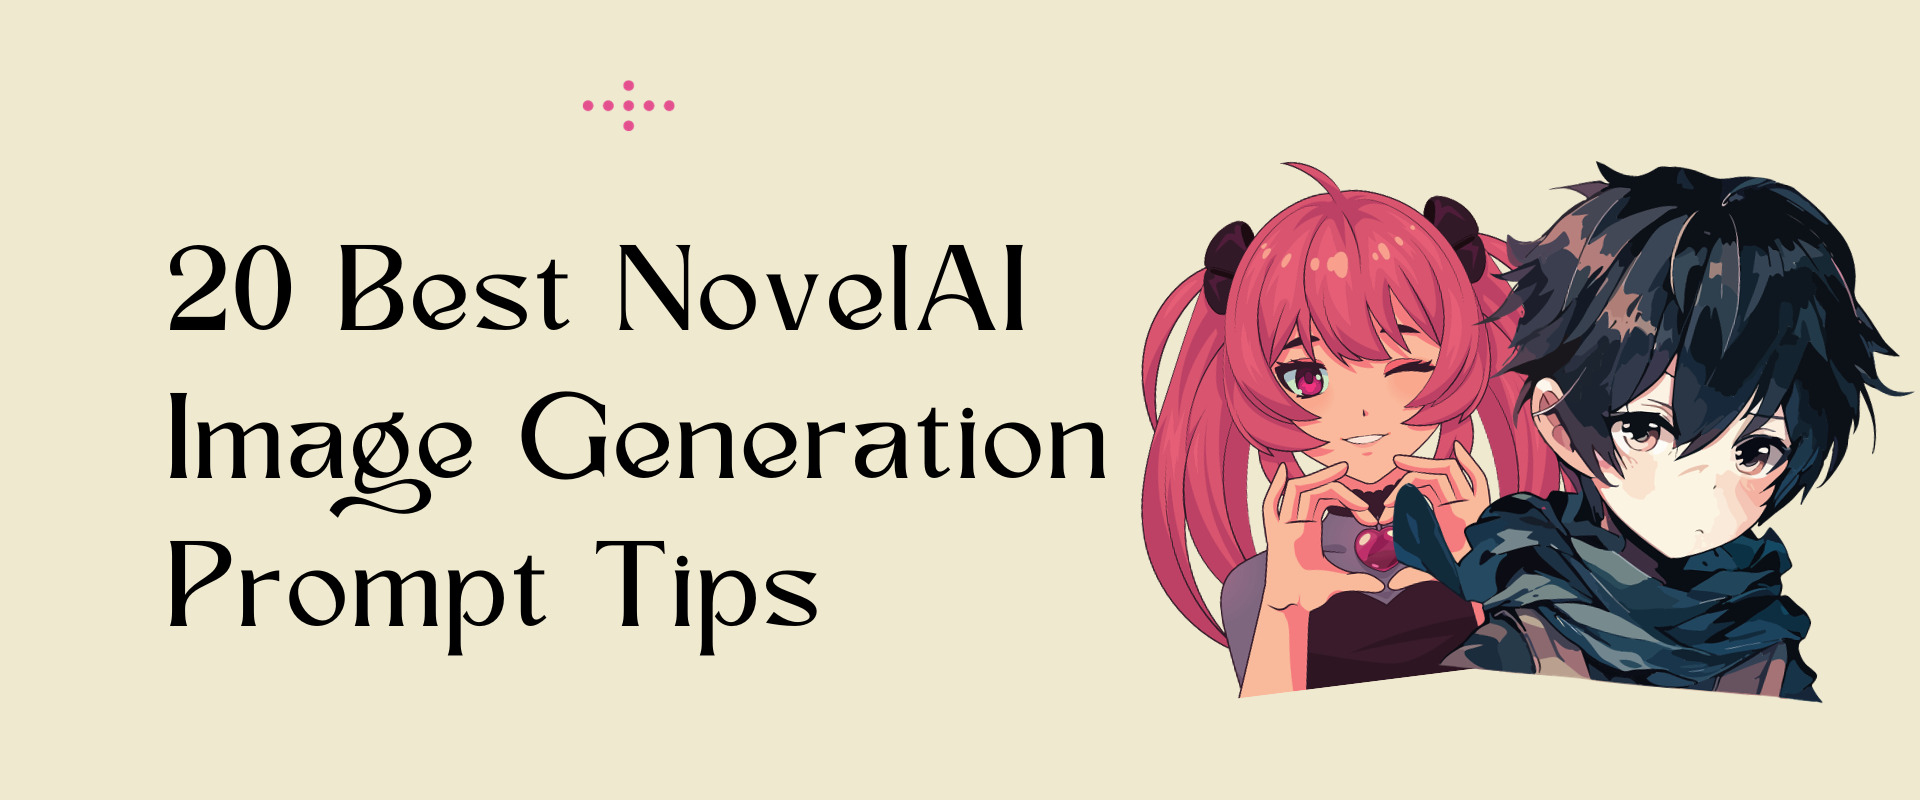 novelai image generation prompt tips